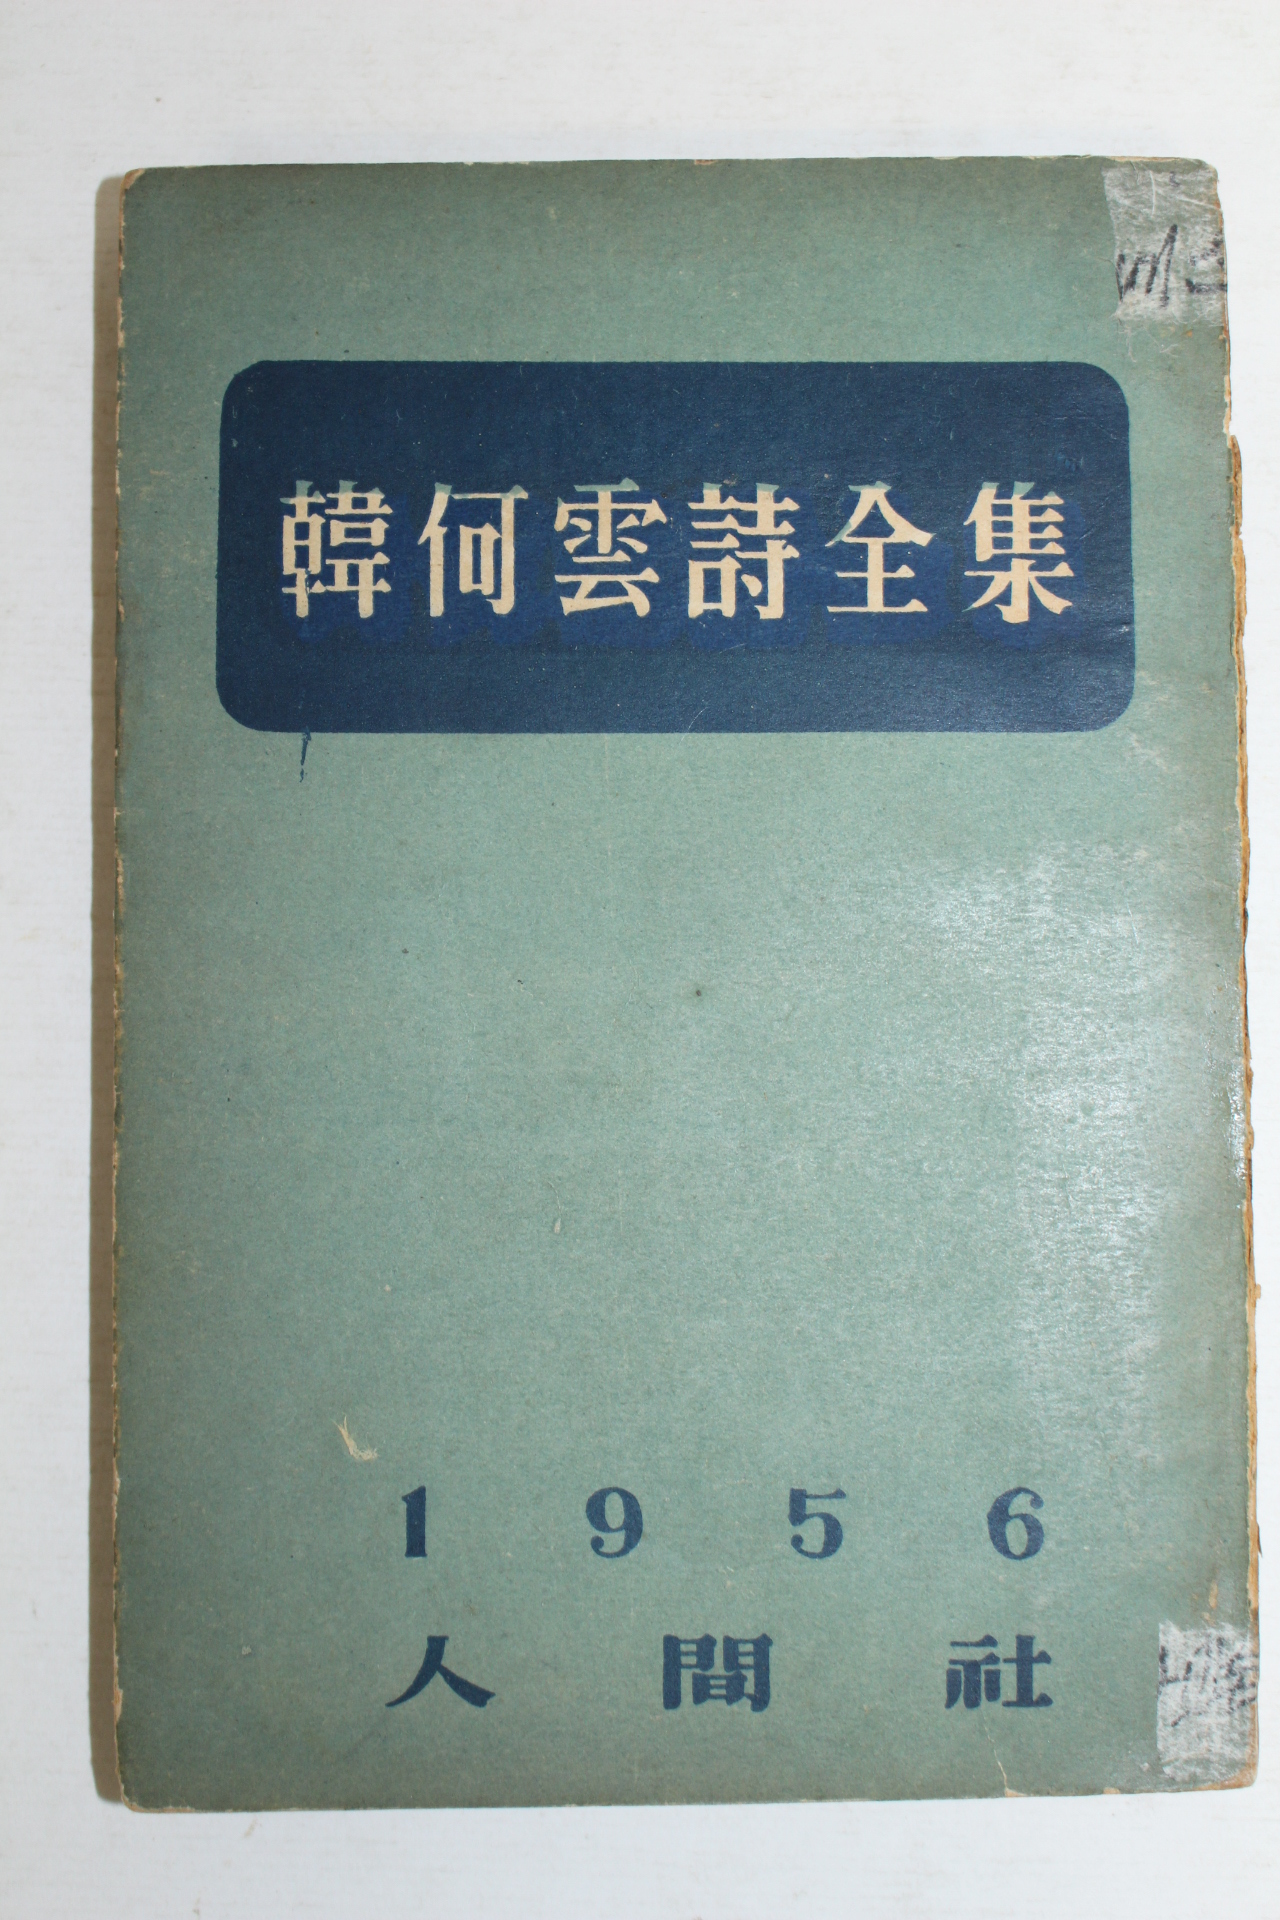 1956년초판 한하운시전집(韓何雲詩全集)(저자싸인본)